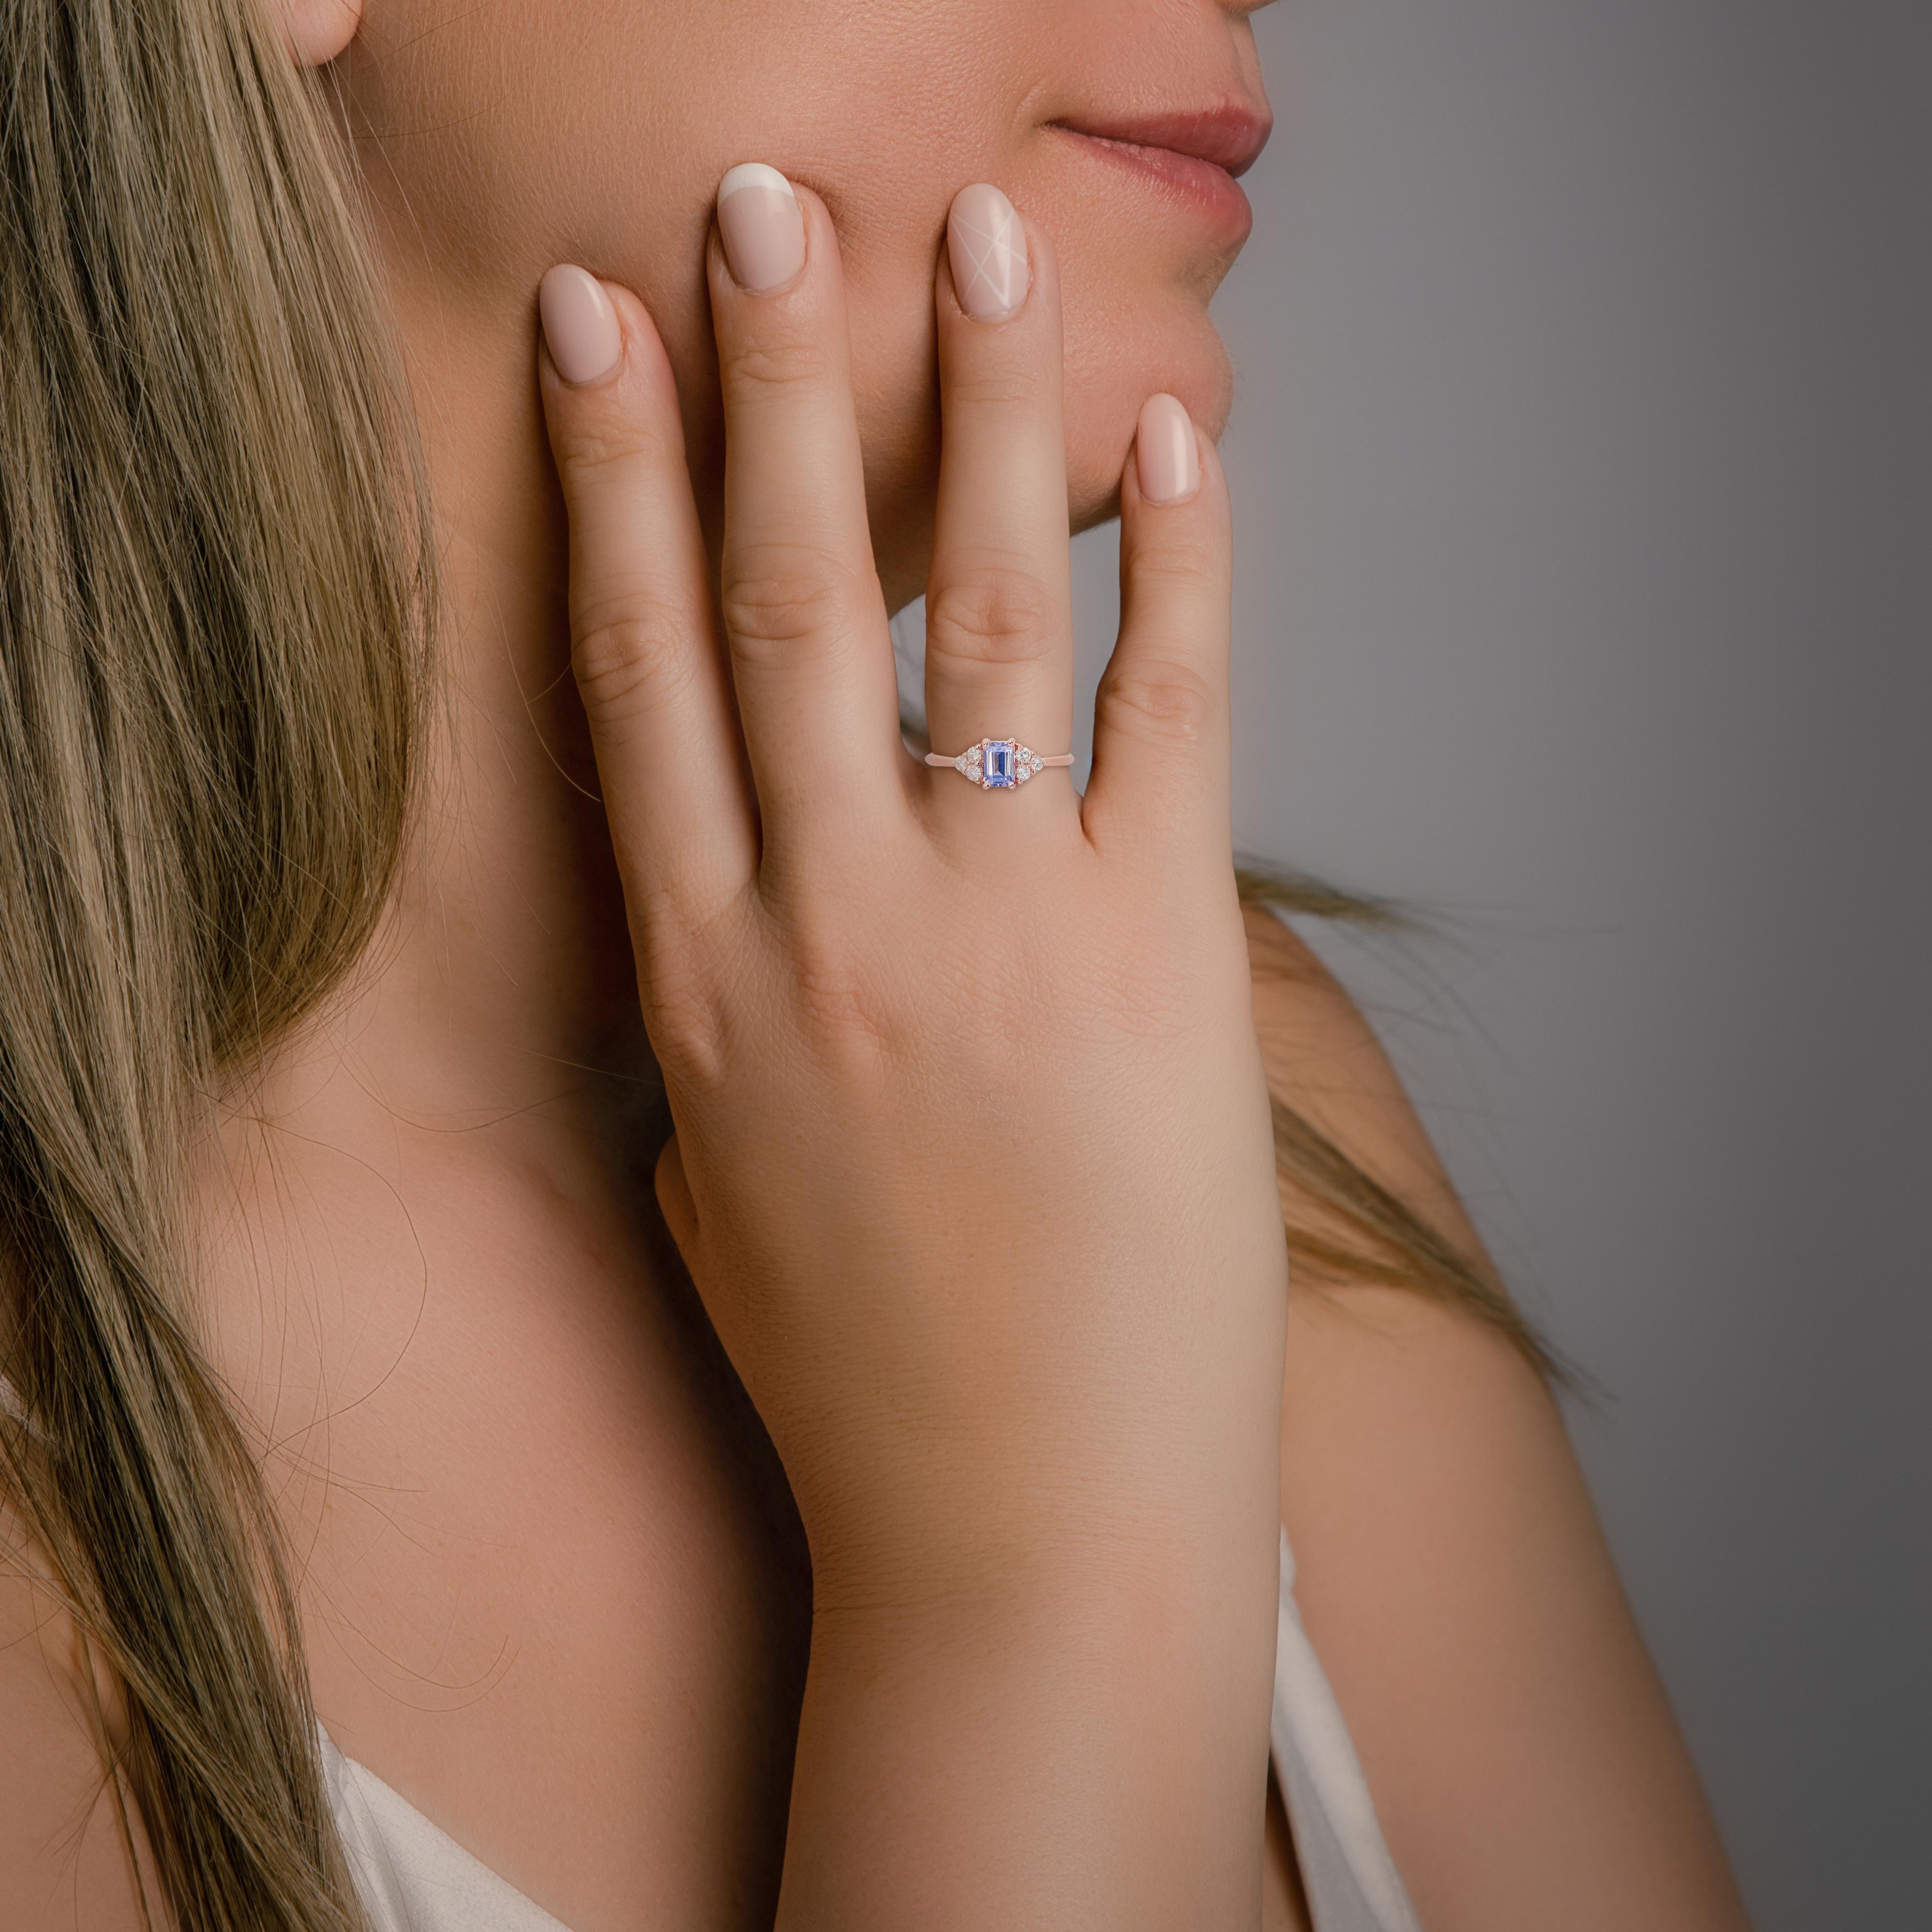 Fesselnder 1,14 ct Tansanit und Diamant Pave Ring in 14k Rose Gold - IGI zertifiziert

Tauchen Sie ein in eine faszinierende Eleganz mit diesem atemberaubenden Ring aus Roségold mit Pflasterung. Das Design zeigt einen faszinierenden Tansanit im